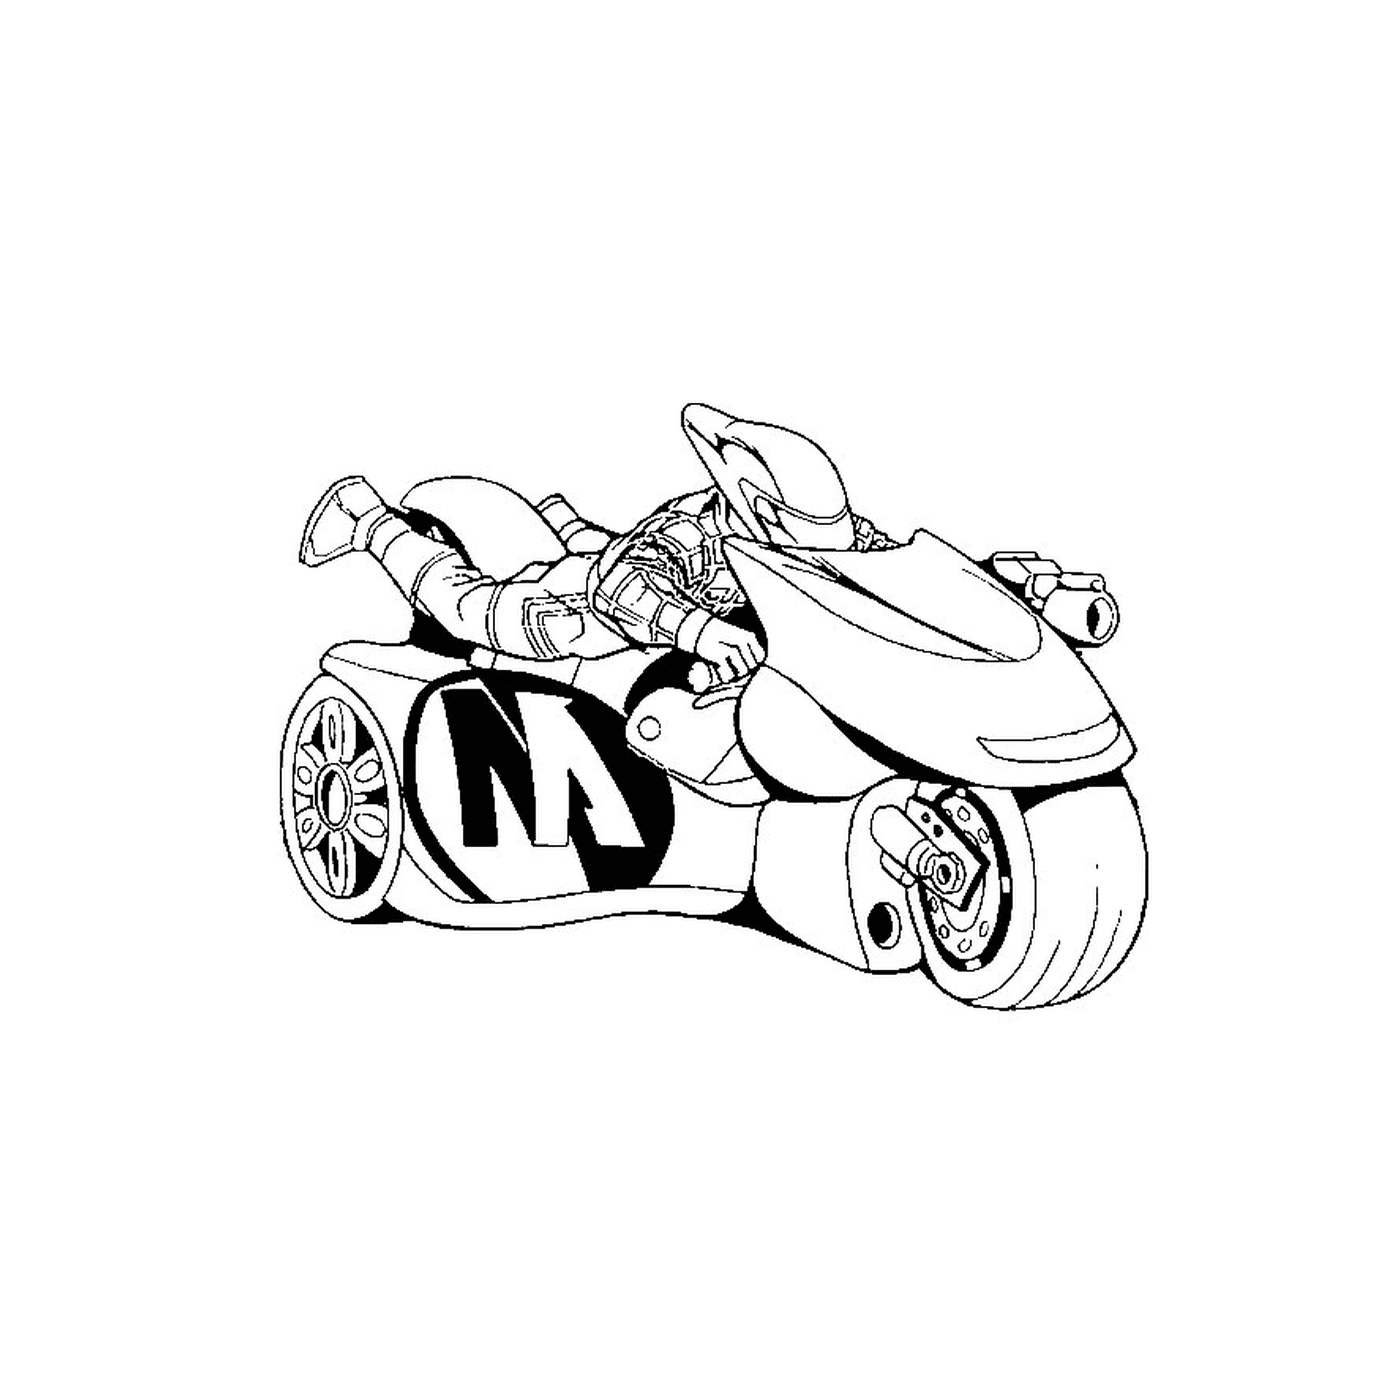  Una motocicleta Batman 